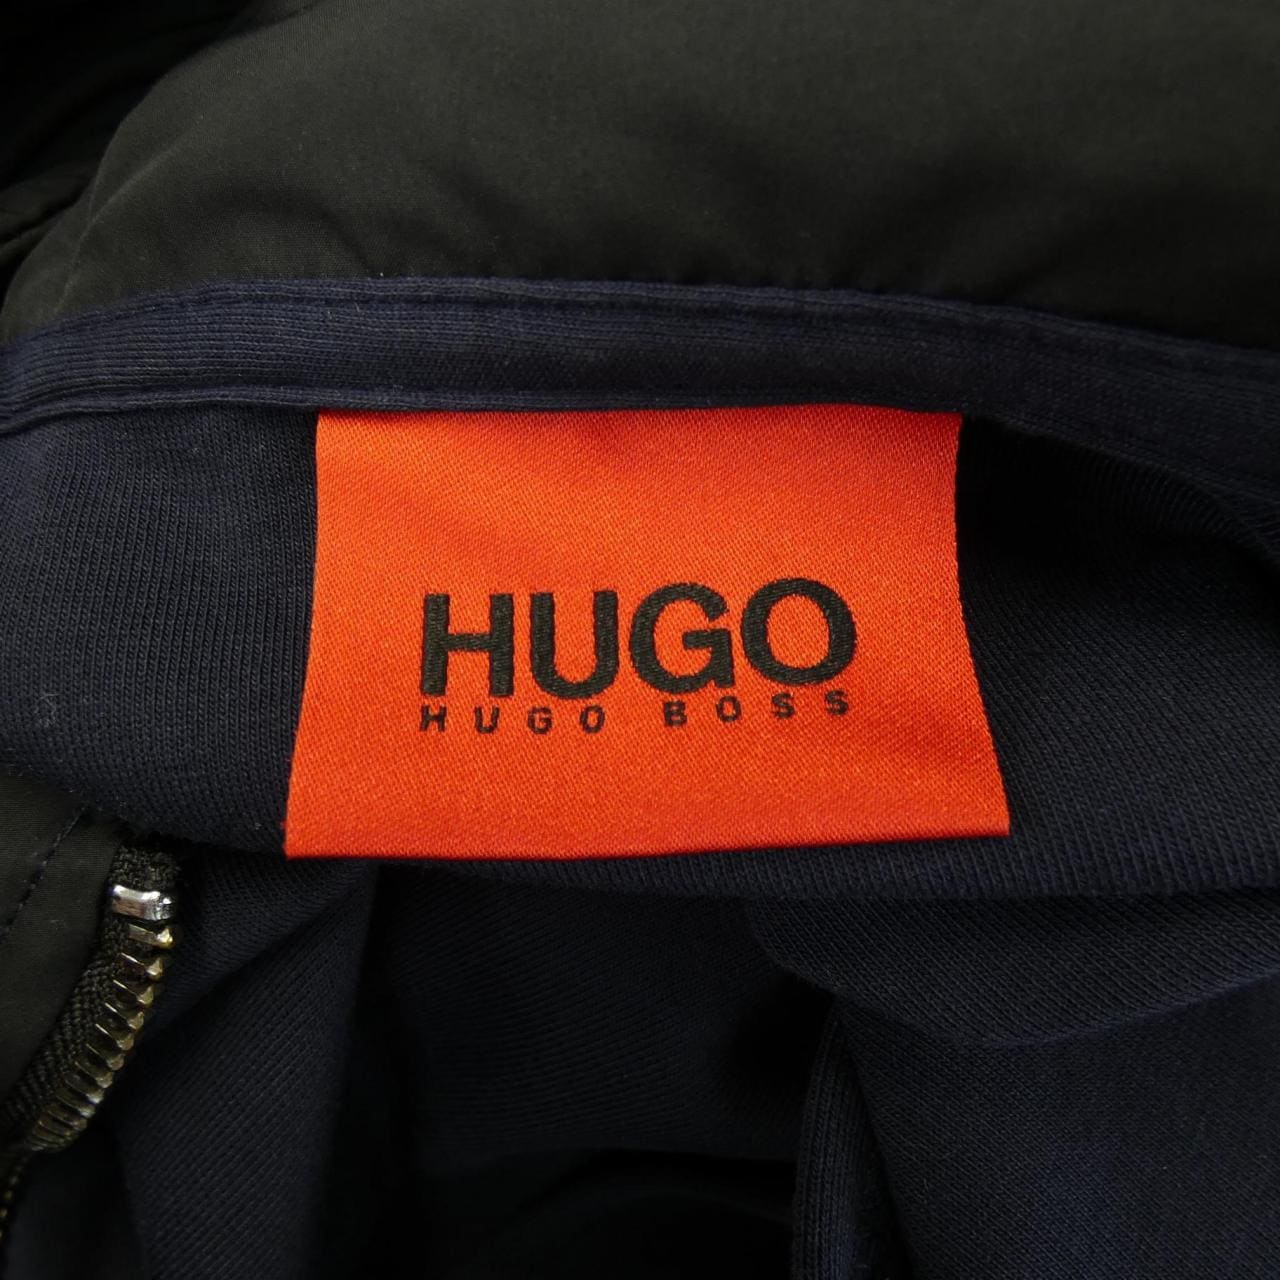 Hugo Boss HUGO BOSS blouson